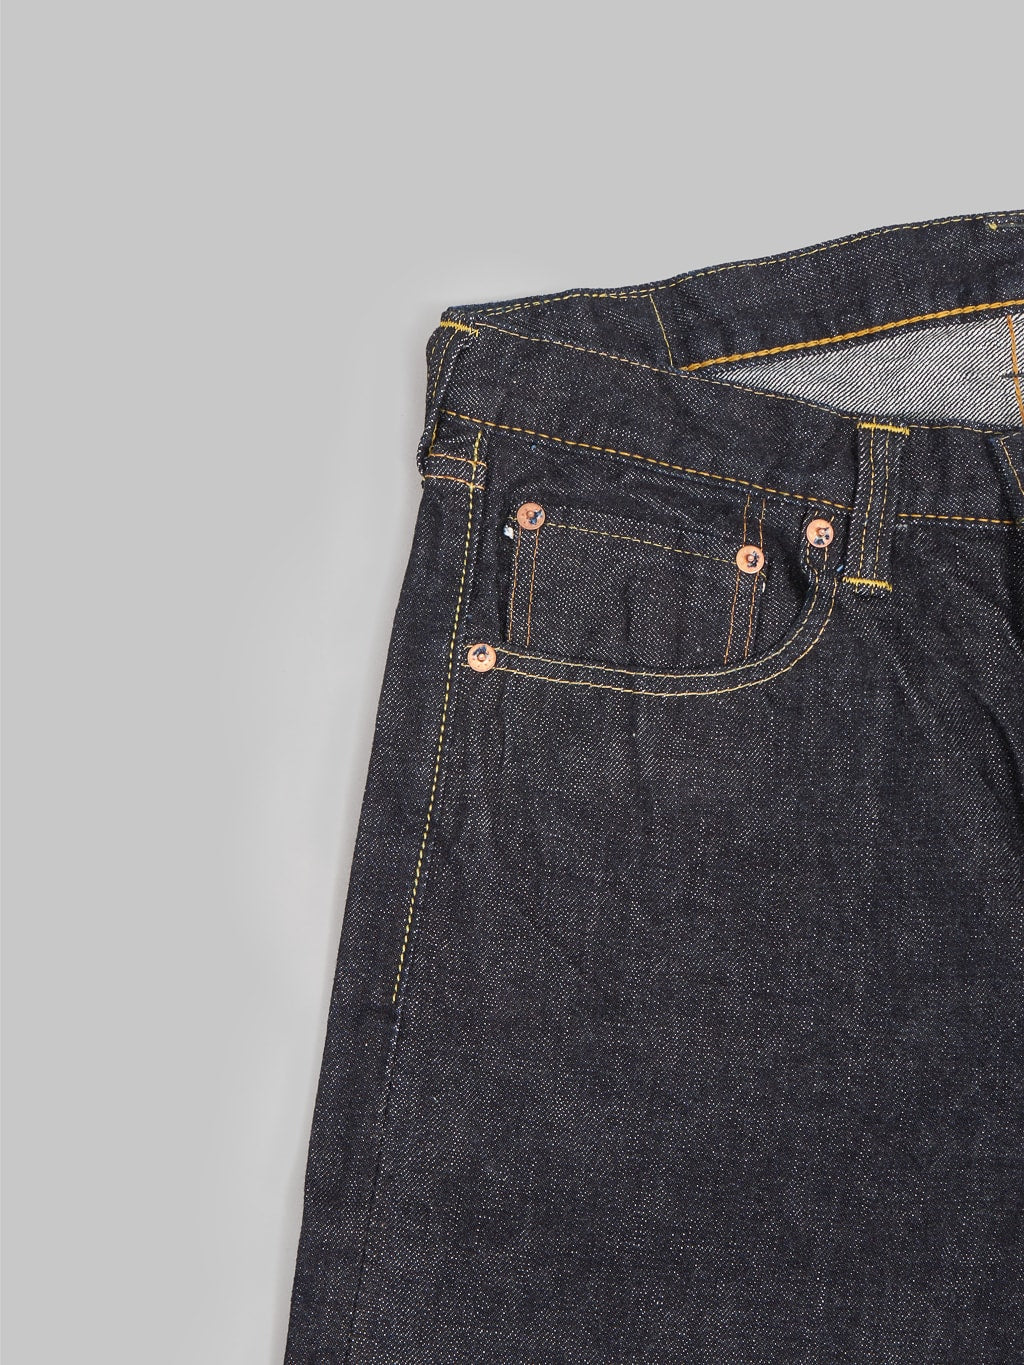 Fullcount 1101XXW regular Straight selvedge Jeans coin pocket